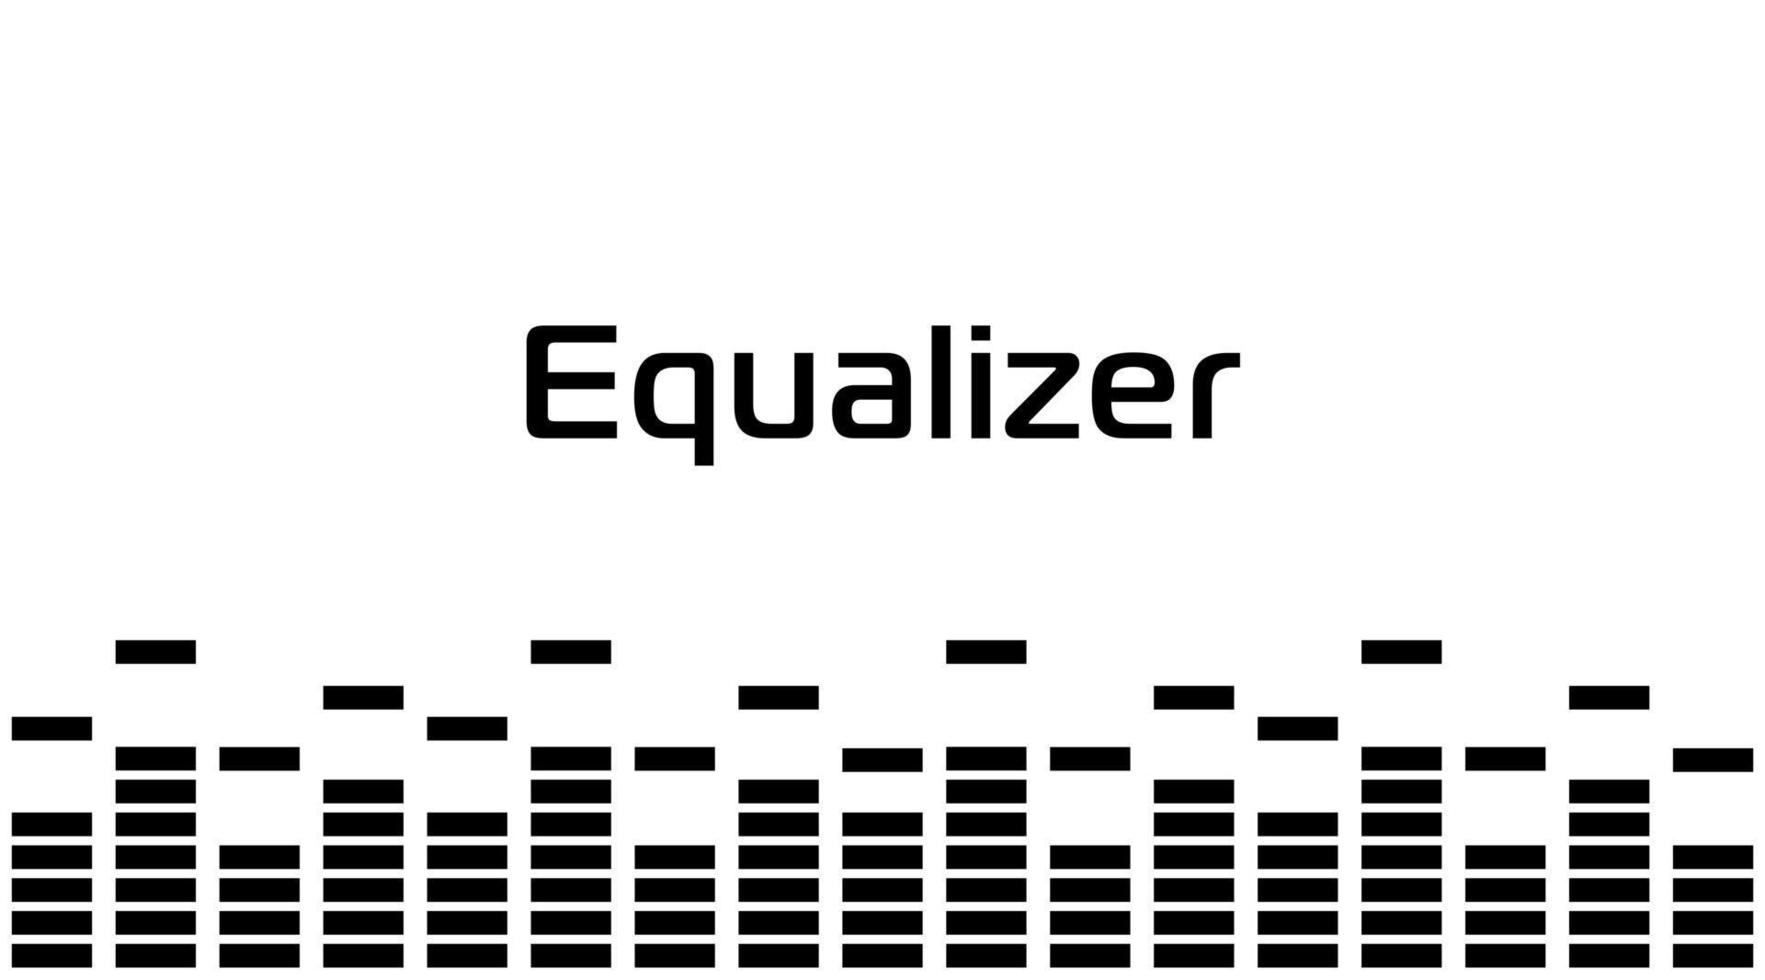 ecualizador digital de sonido, rectángulos, borde negro simple. onda de radio musical. Diseño gráfico de voz digital, ilustración vectorial. vector